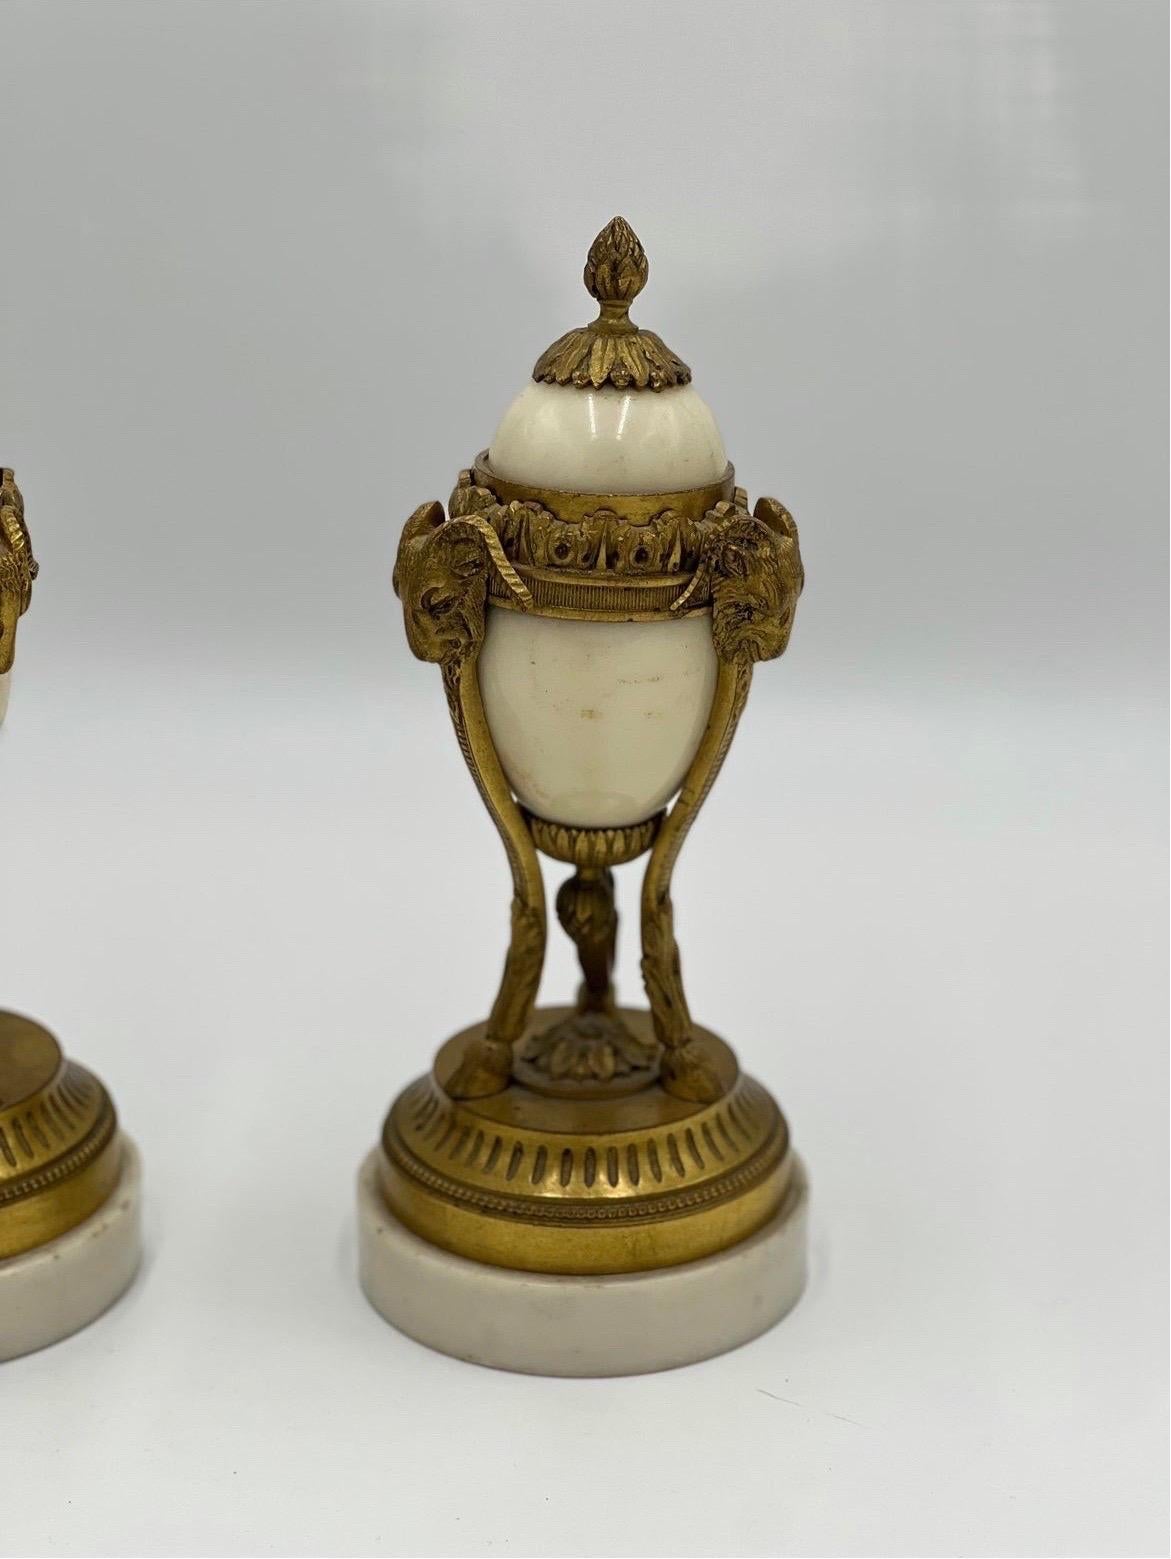 Paire de cassolettes en bronze doré et marbre blanc de style Louis XVI du XIXe siècle. Chacune est décorée de trois têtes de bélier soutenues par des pieds en sabot, d'un accent perlé et de couvercles amovibles.